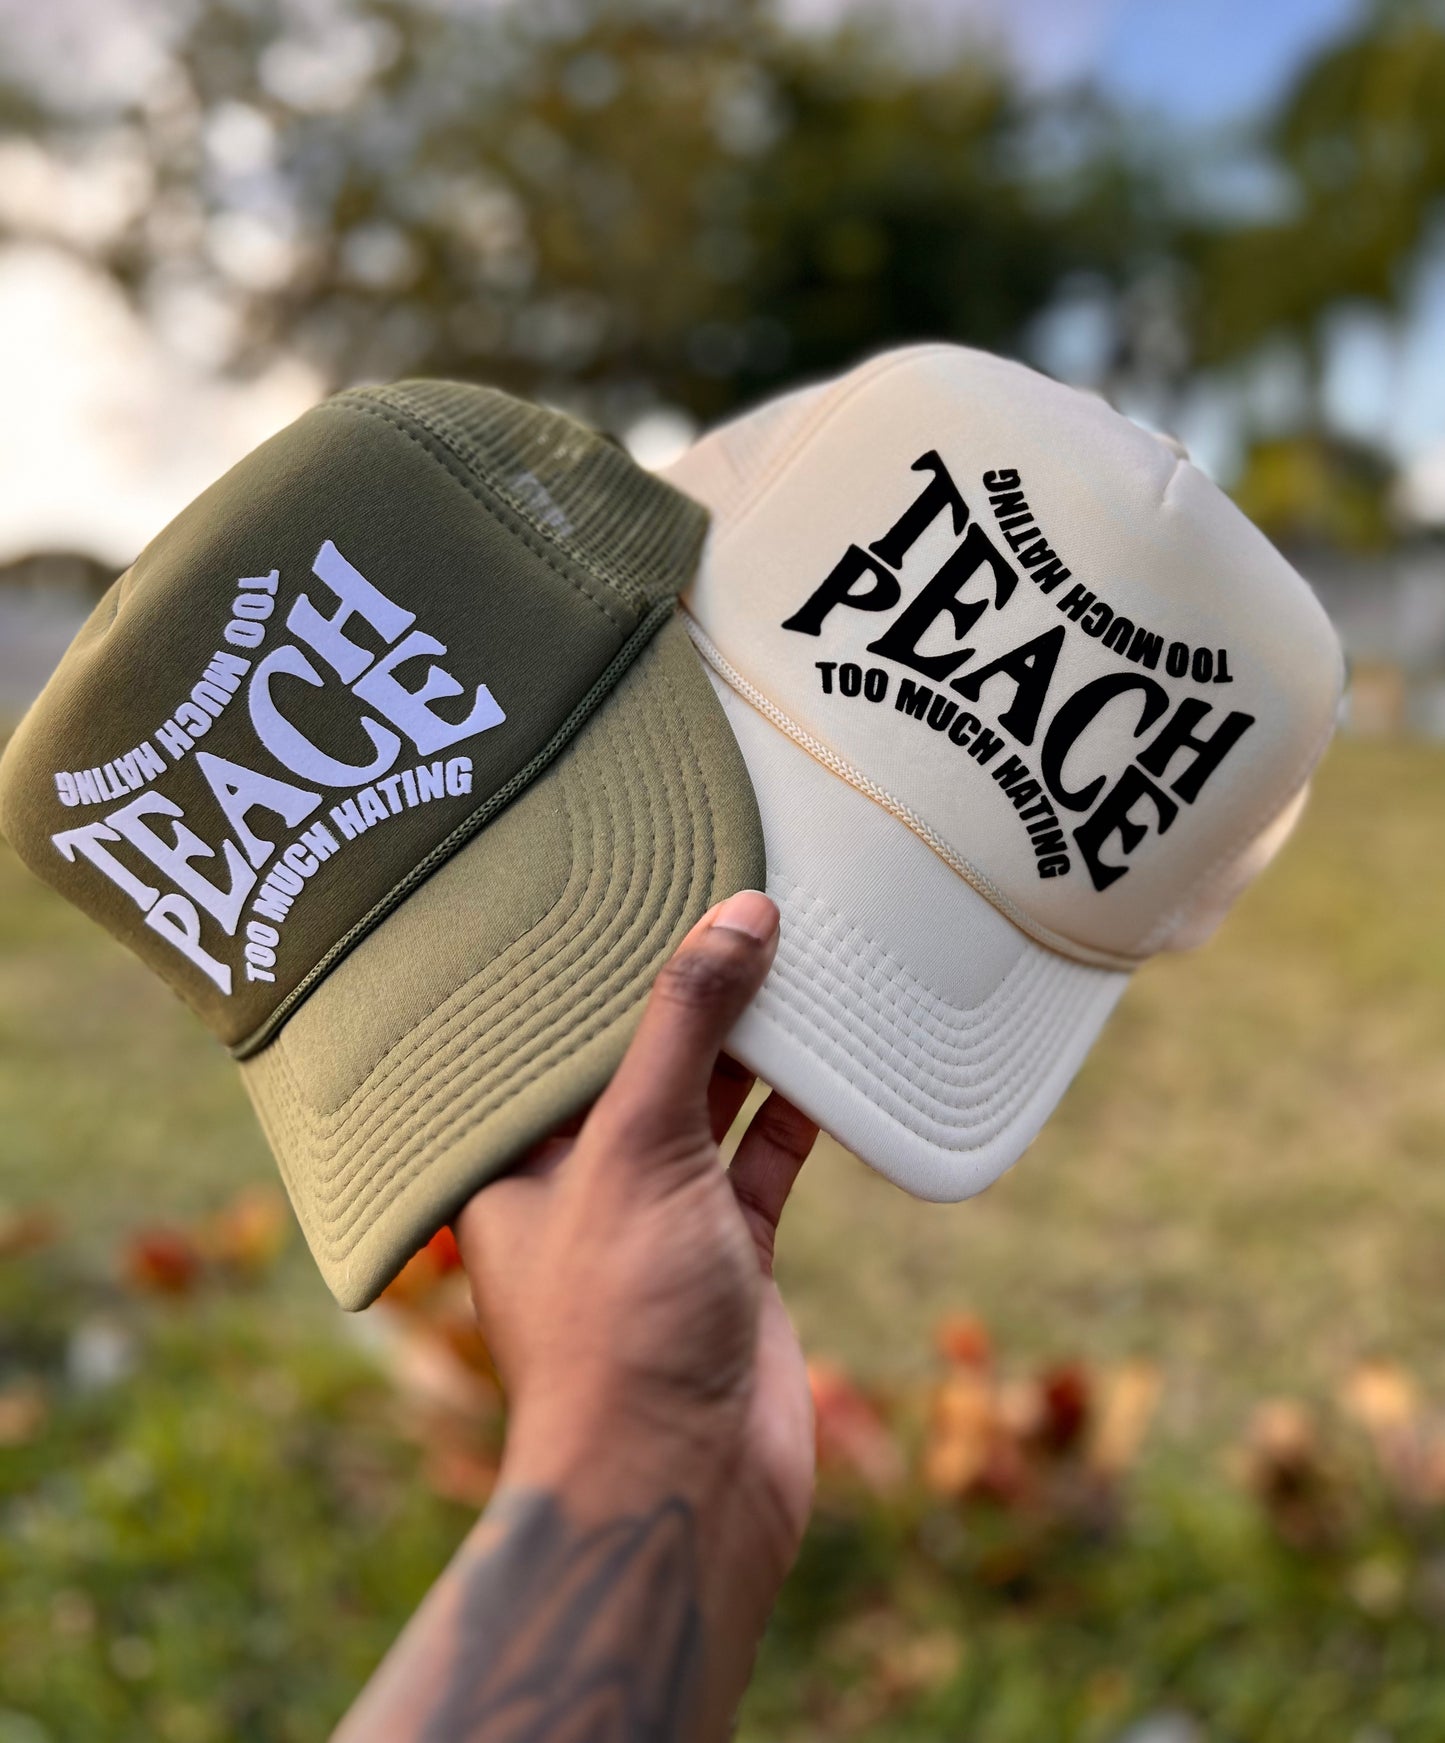 PEACE Trucker Hats